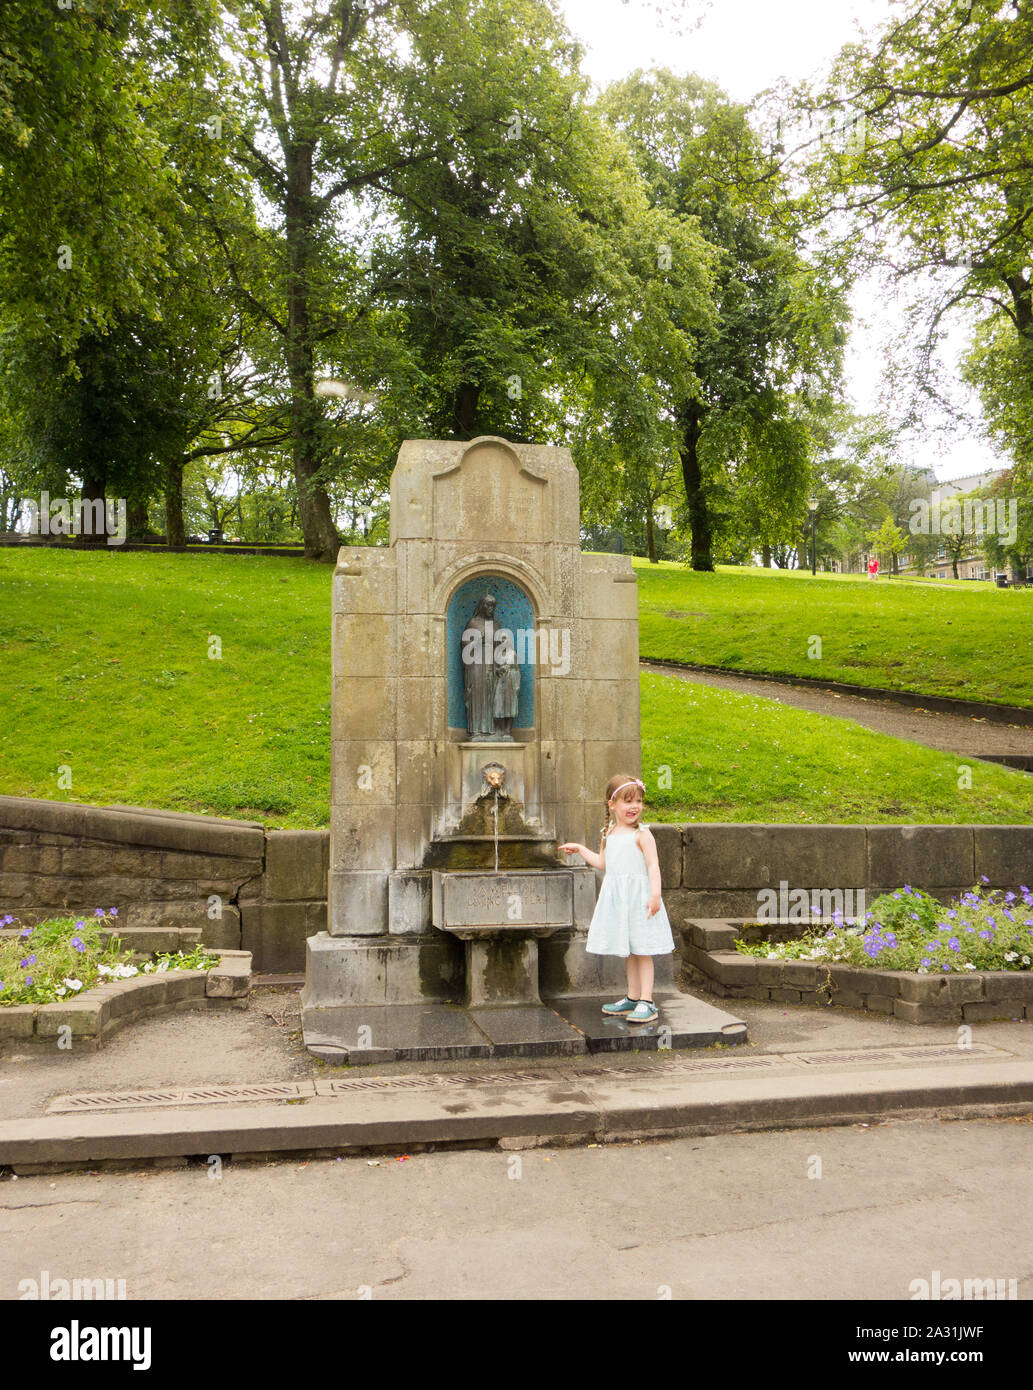 Jeune fille par Buxton permanent de l'eau de source de St Anne's bien dans la ville thermale de Buxton Derbyshire, Angleterre Banque D'Images